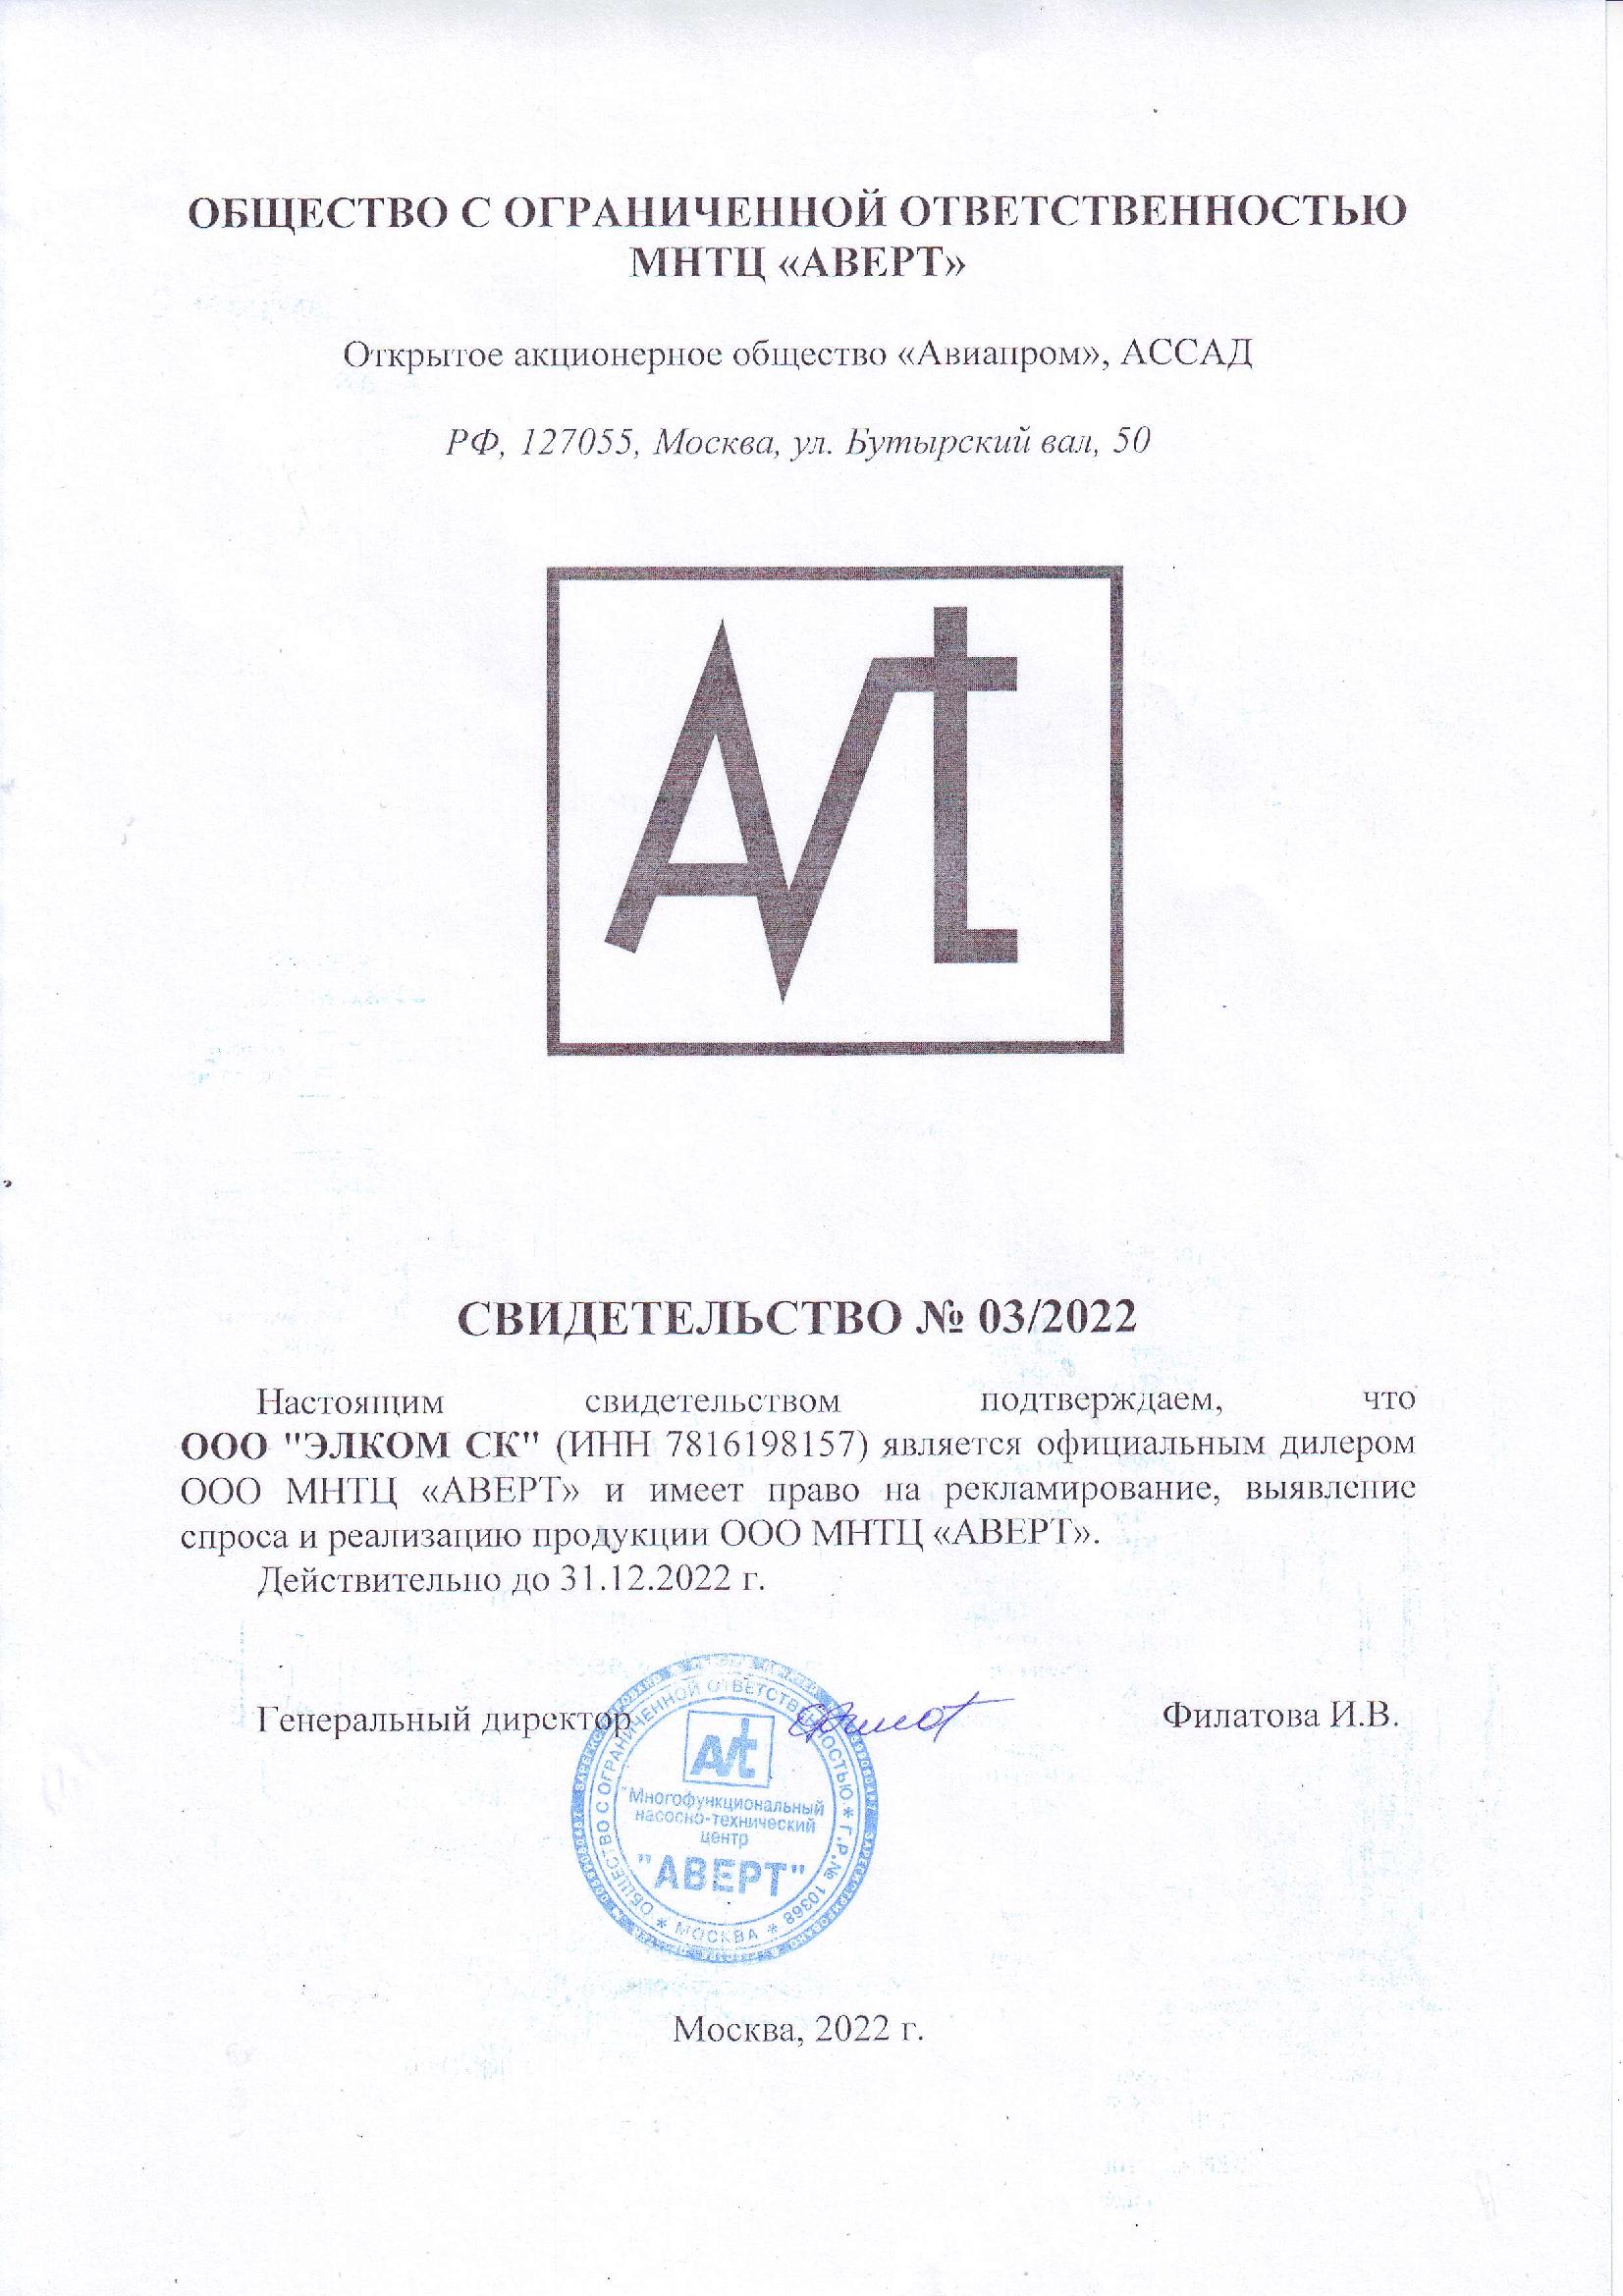 Сертификат Московский научно-технический центр «АВЕРТ»